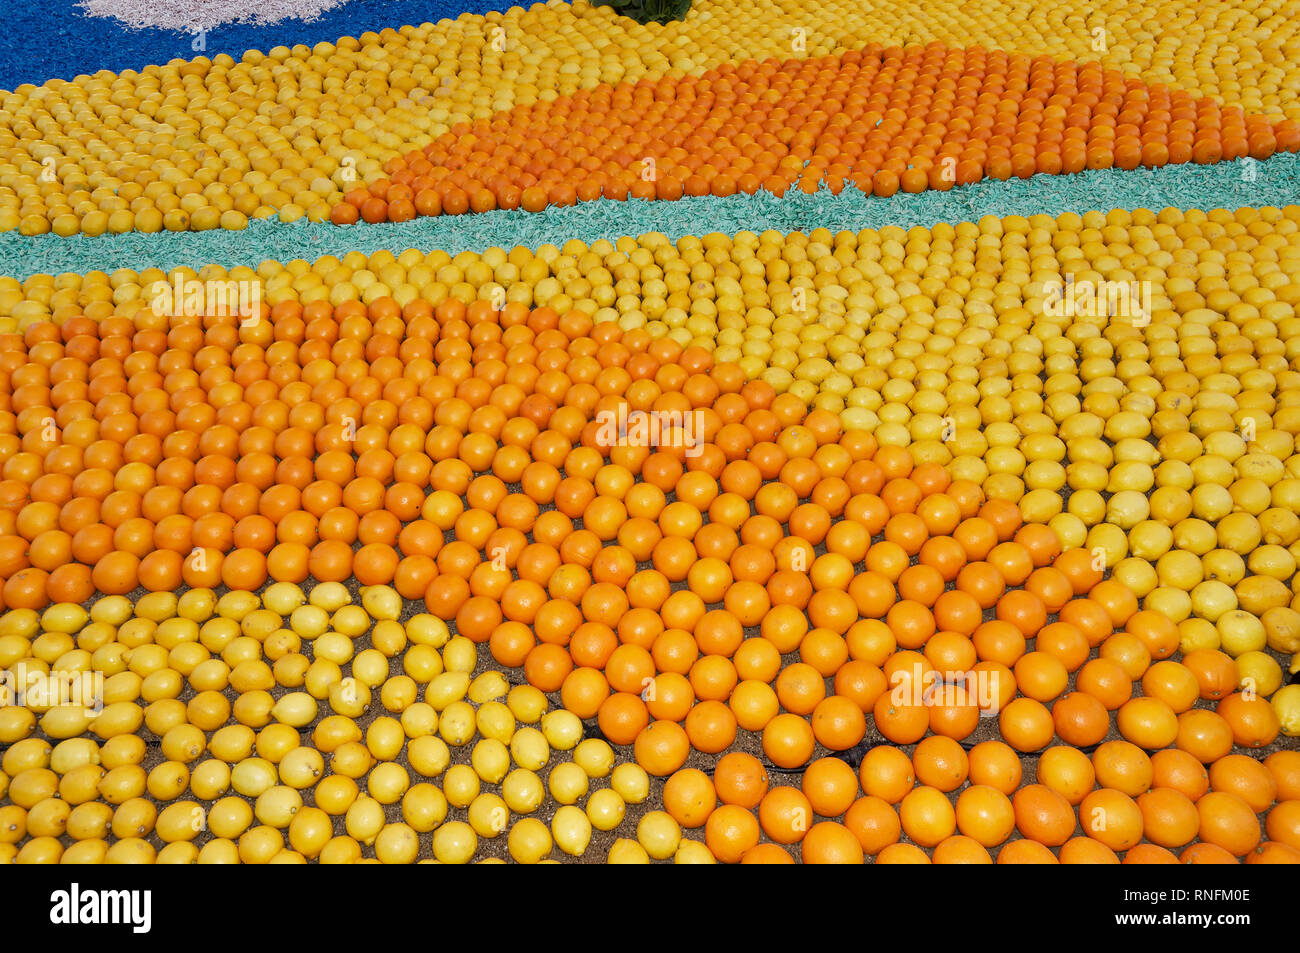 16 février 2019, Menton, France la 86e Fête du Citron (les mondes fantastiques : modèle de citrons et oranges) pendant le Carnaval de Nice Banque D'Images